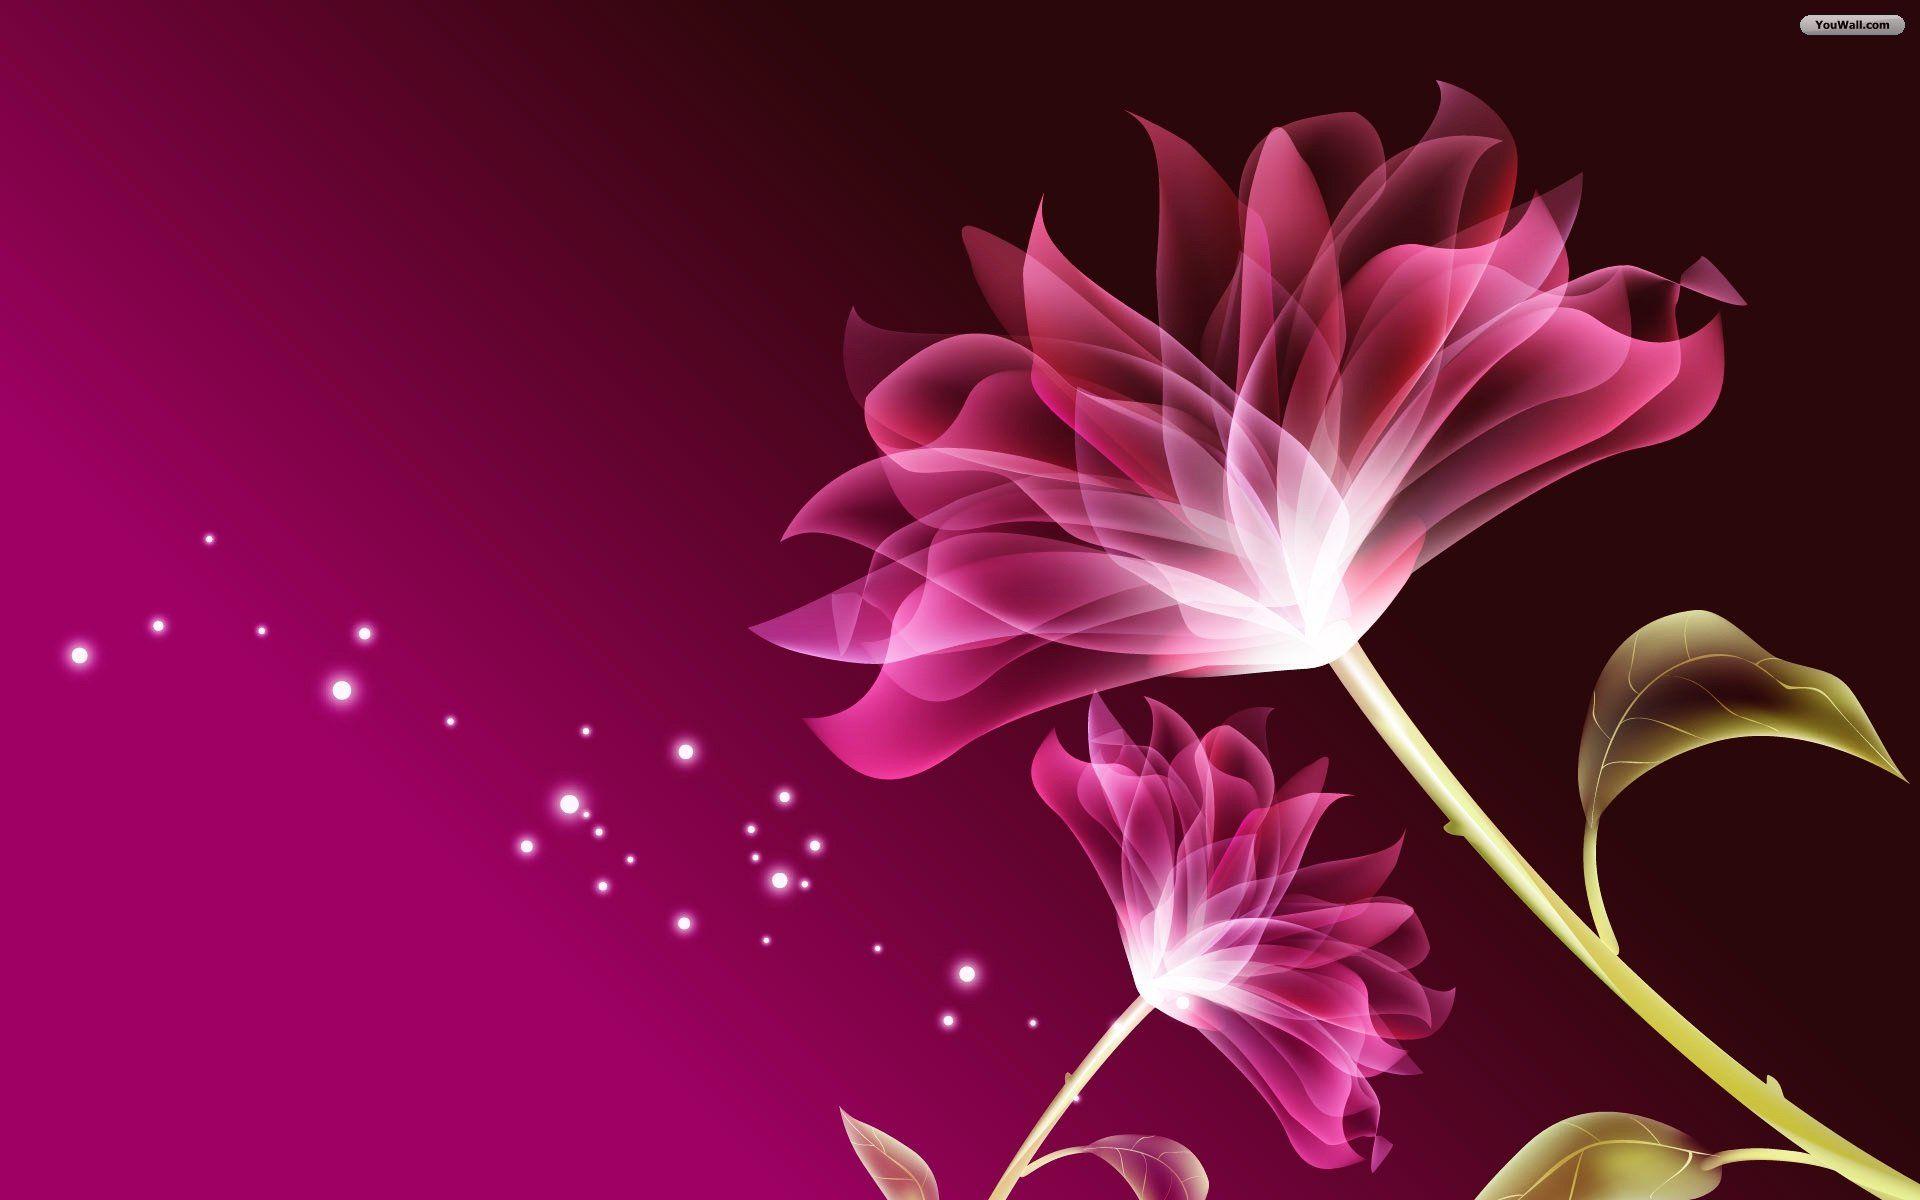 Purple Flower Background Free Download 11837 Full HD Wallpaper